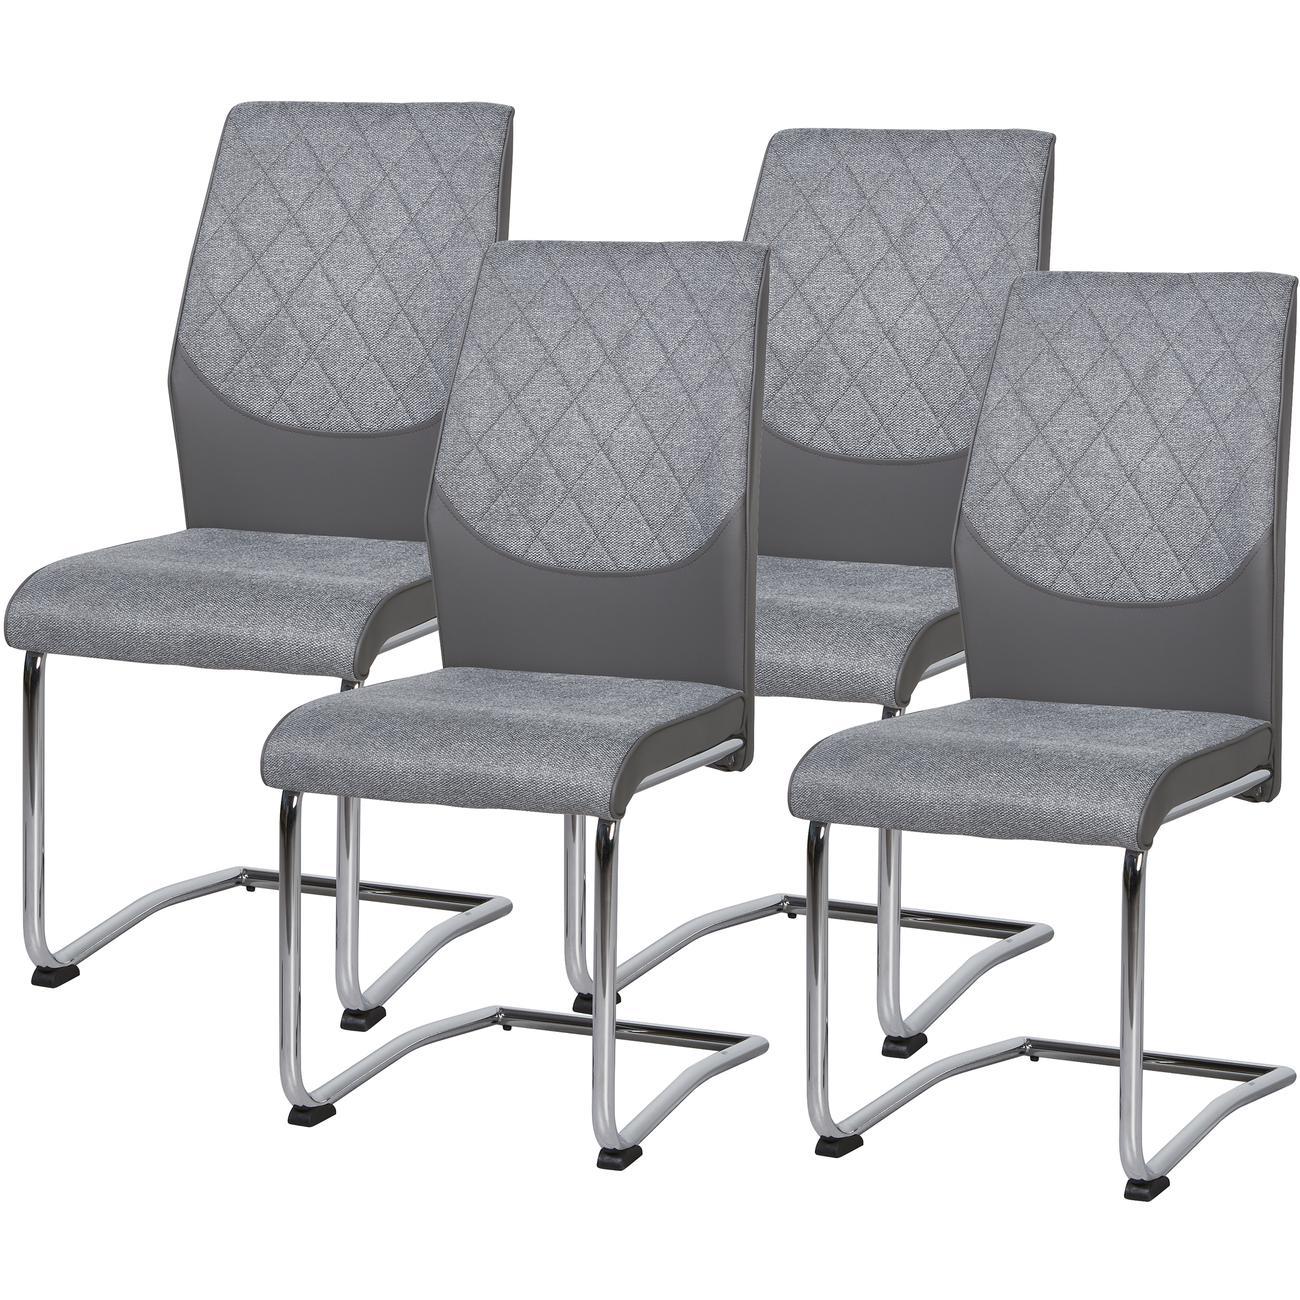 Chaise assise tissu gris pieds métal - Lot de 4